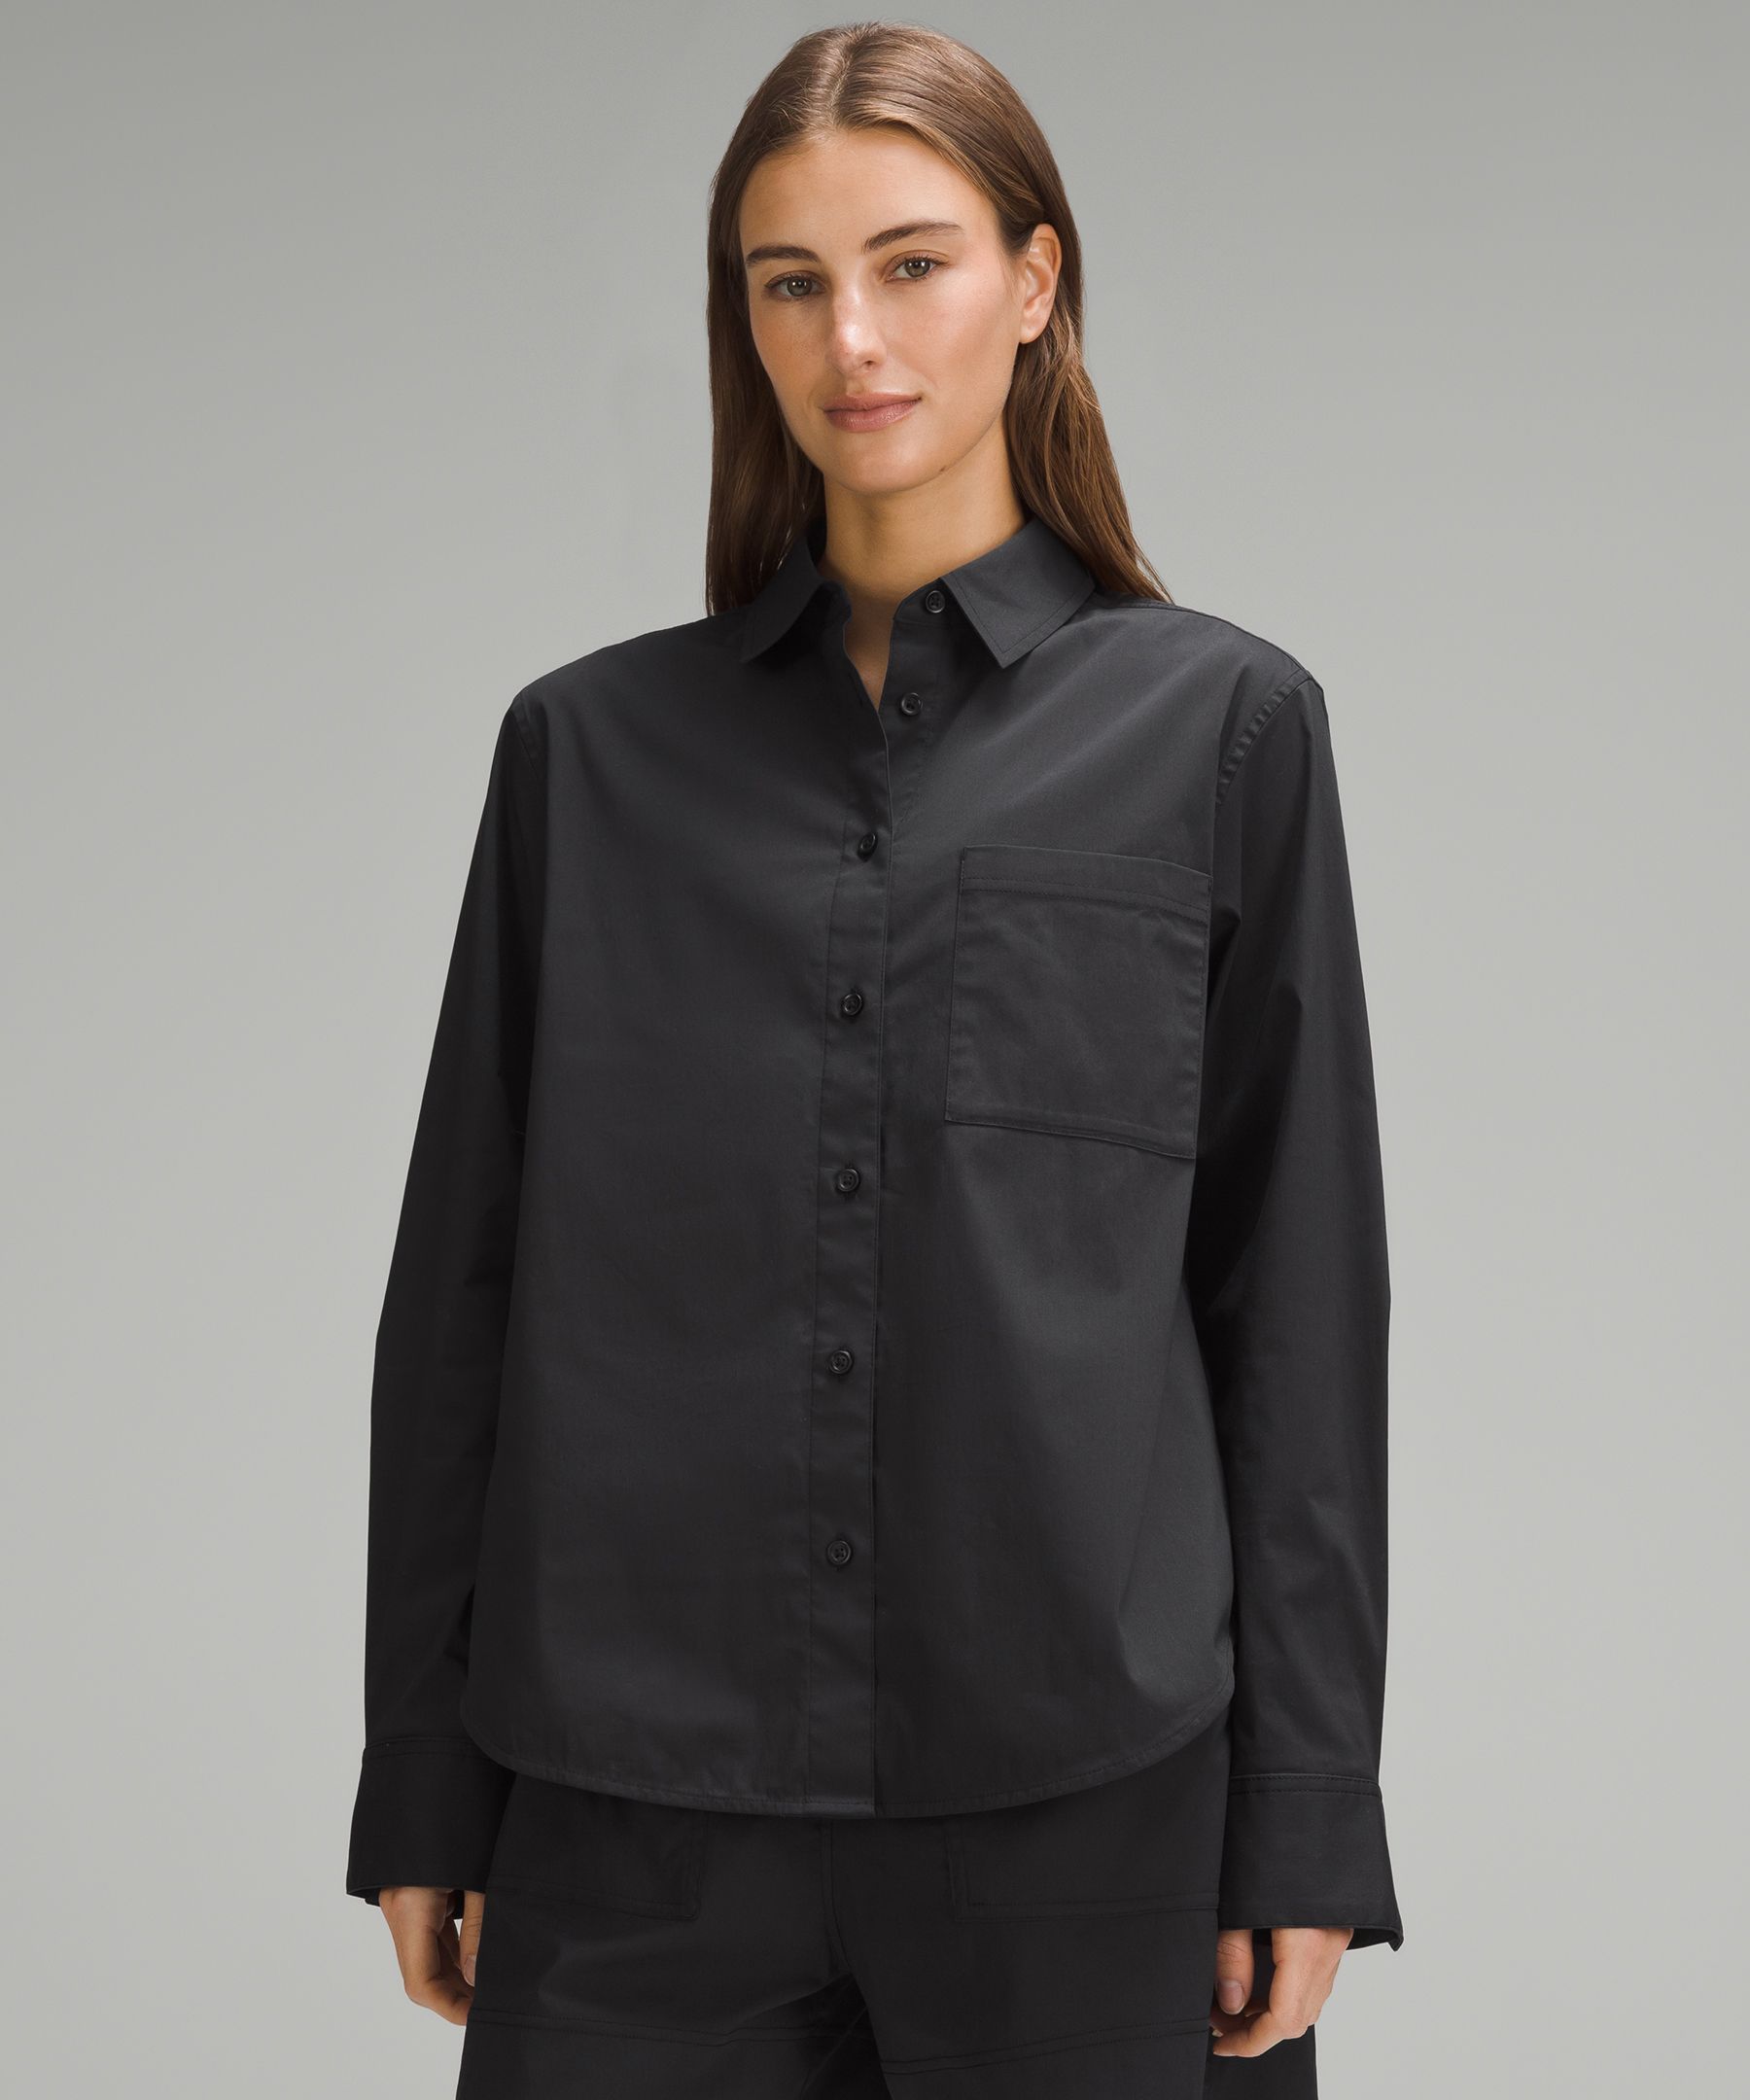 Lululemon Athletica Grey Long Sleeve Shirt Women's Size Medium